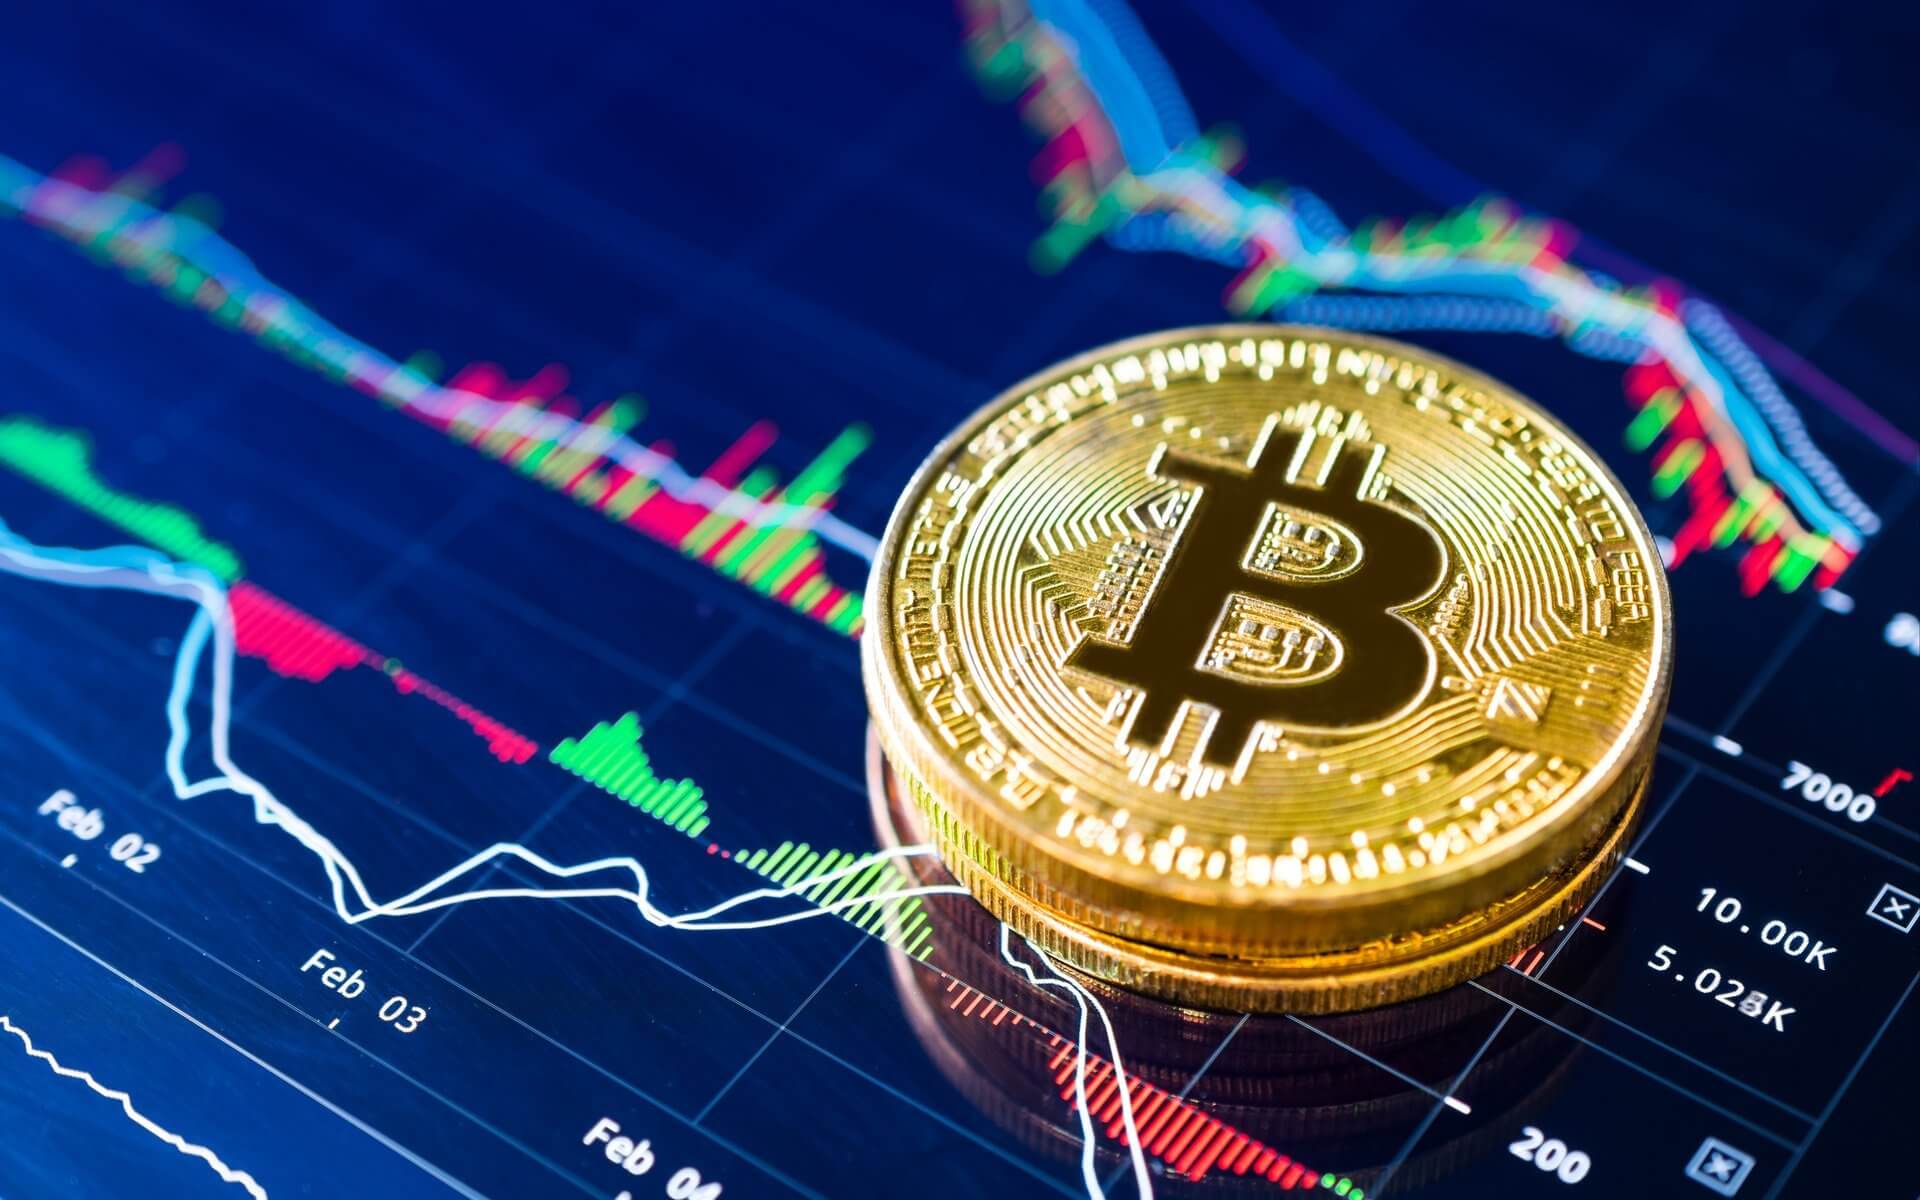 Cara Trading Bitcoin tanpa Modal